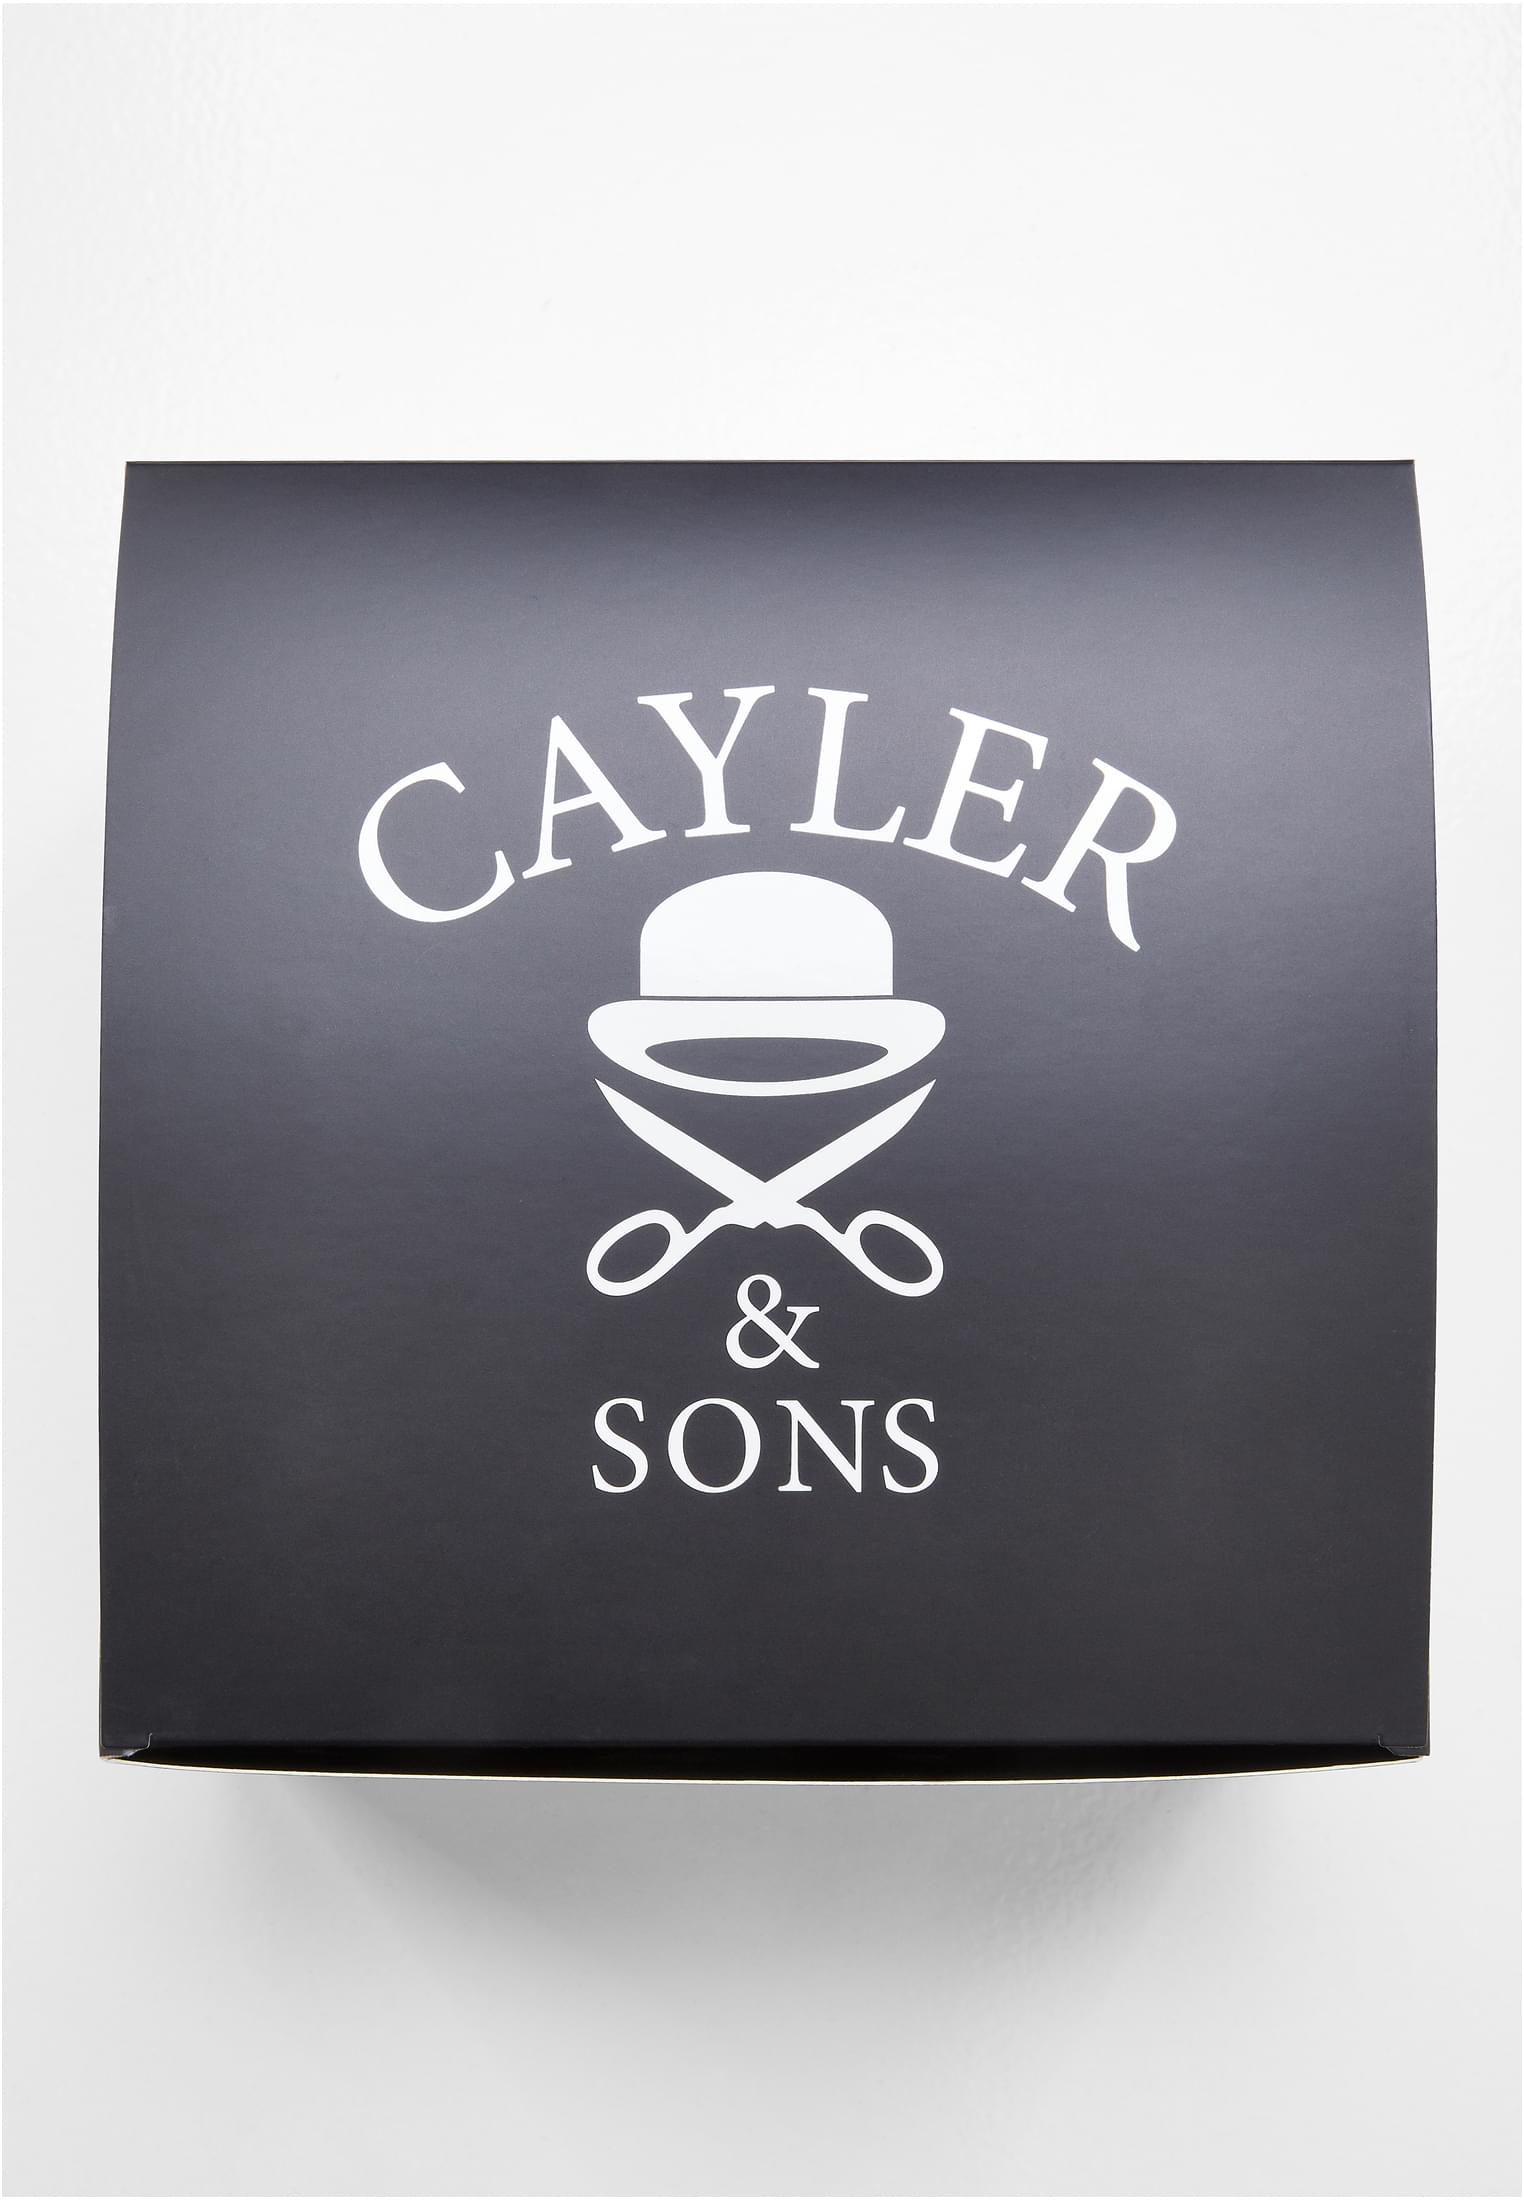 Cayler & Sons Capbox-CS004